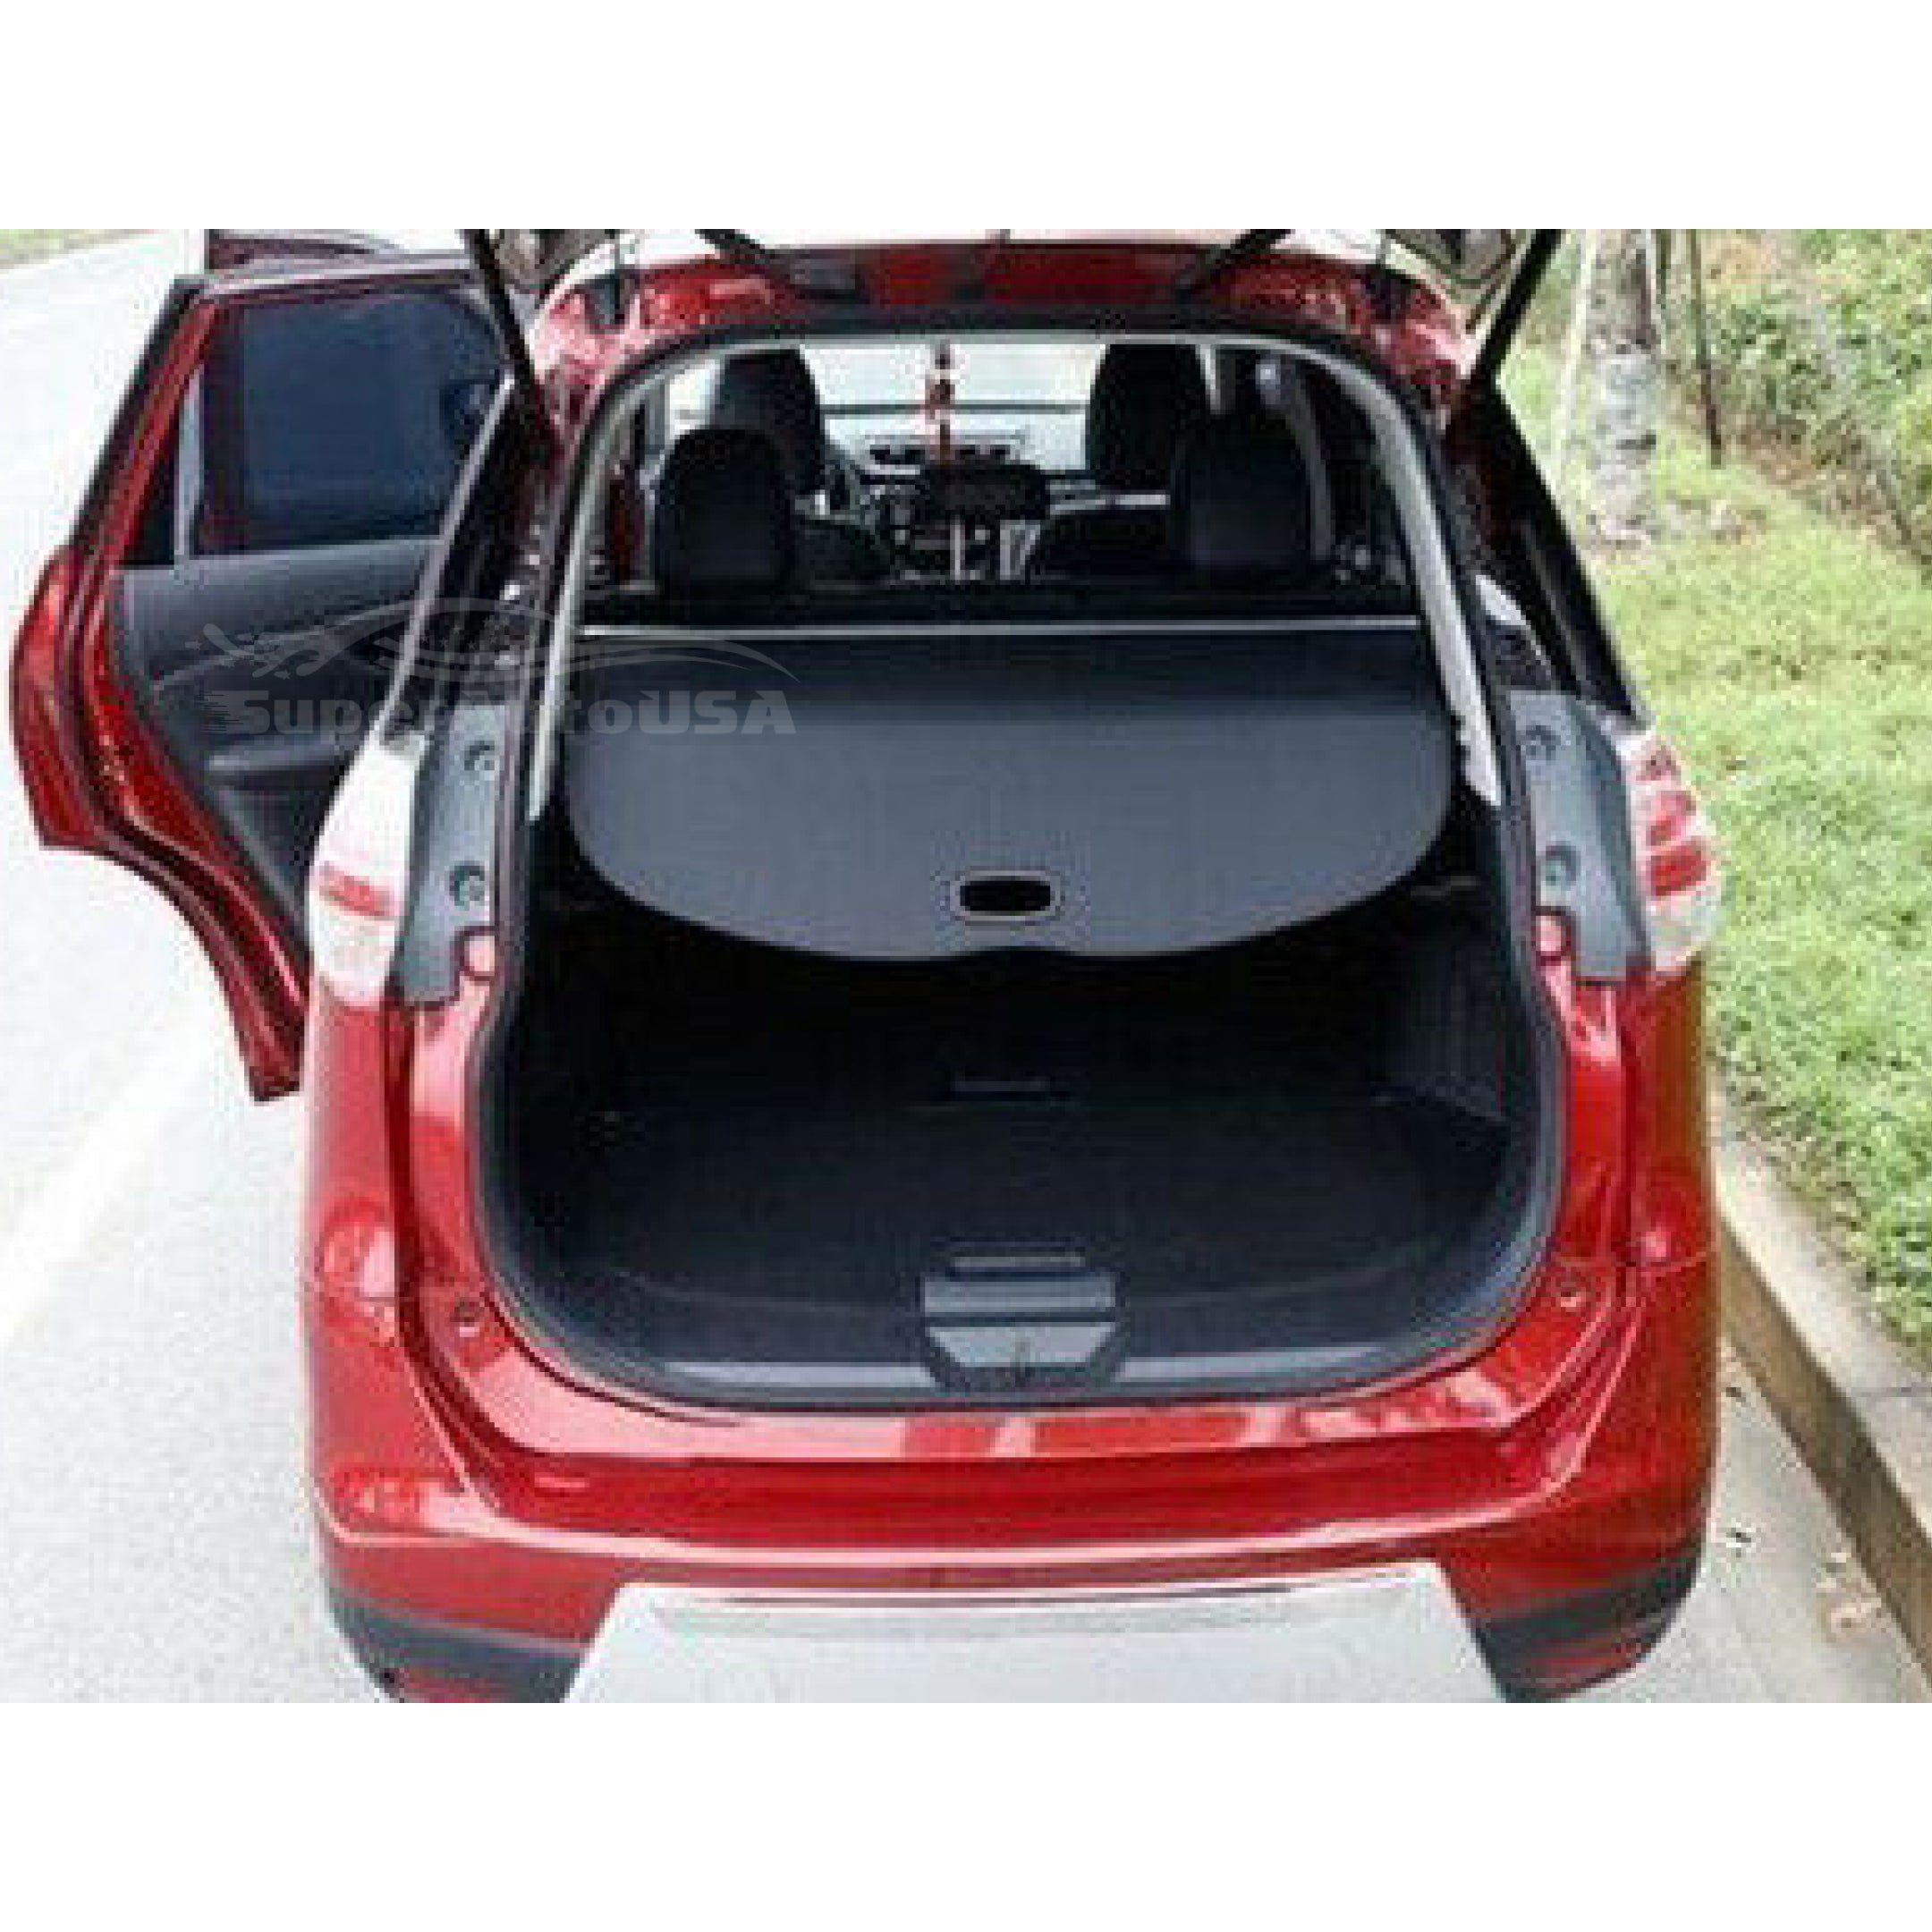 Se adapta a la cubierta de carga Tonneau retráctil del maletero trasero del equipaje Toyota Prius 2016-2021 (negro) - 0